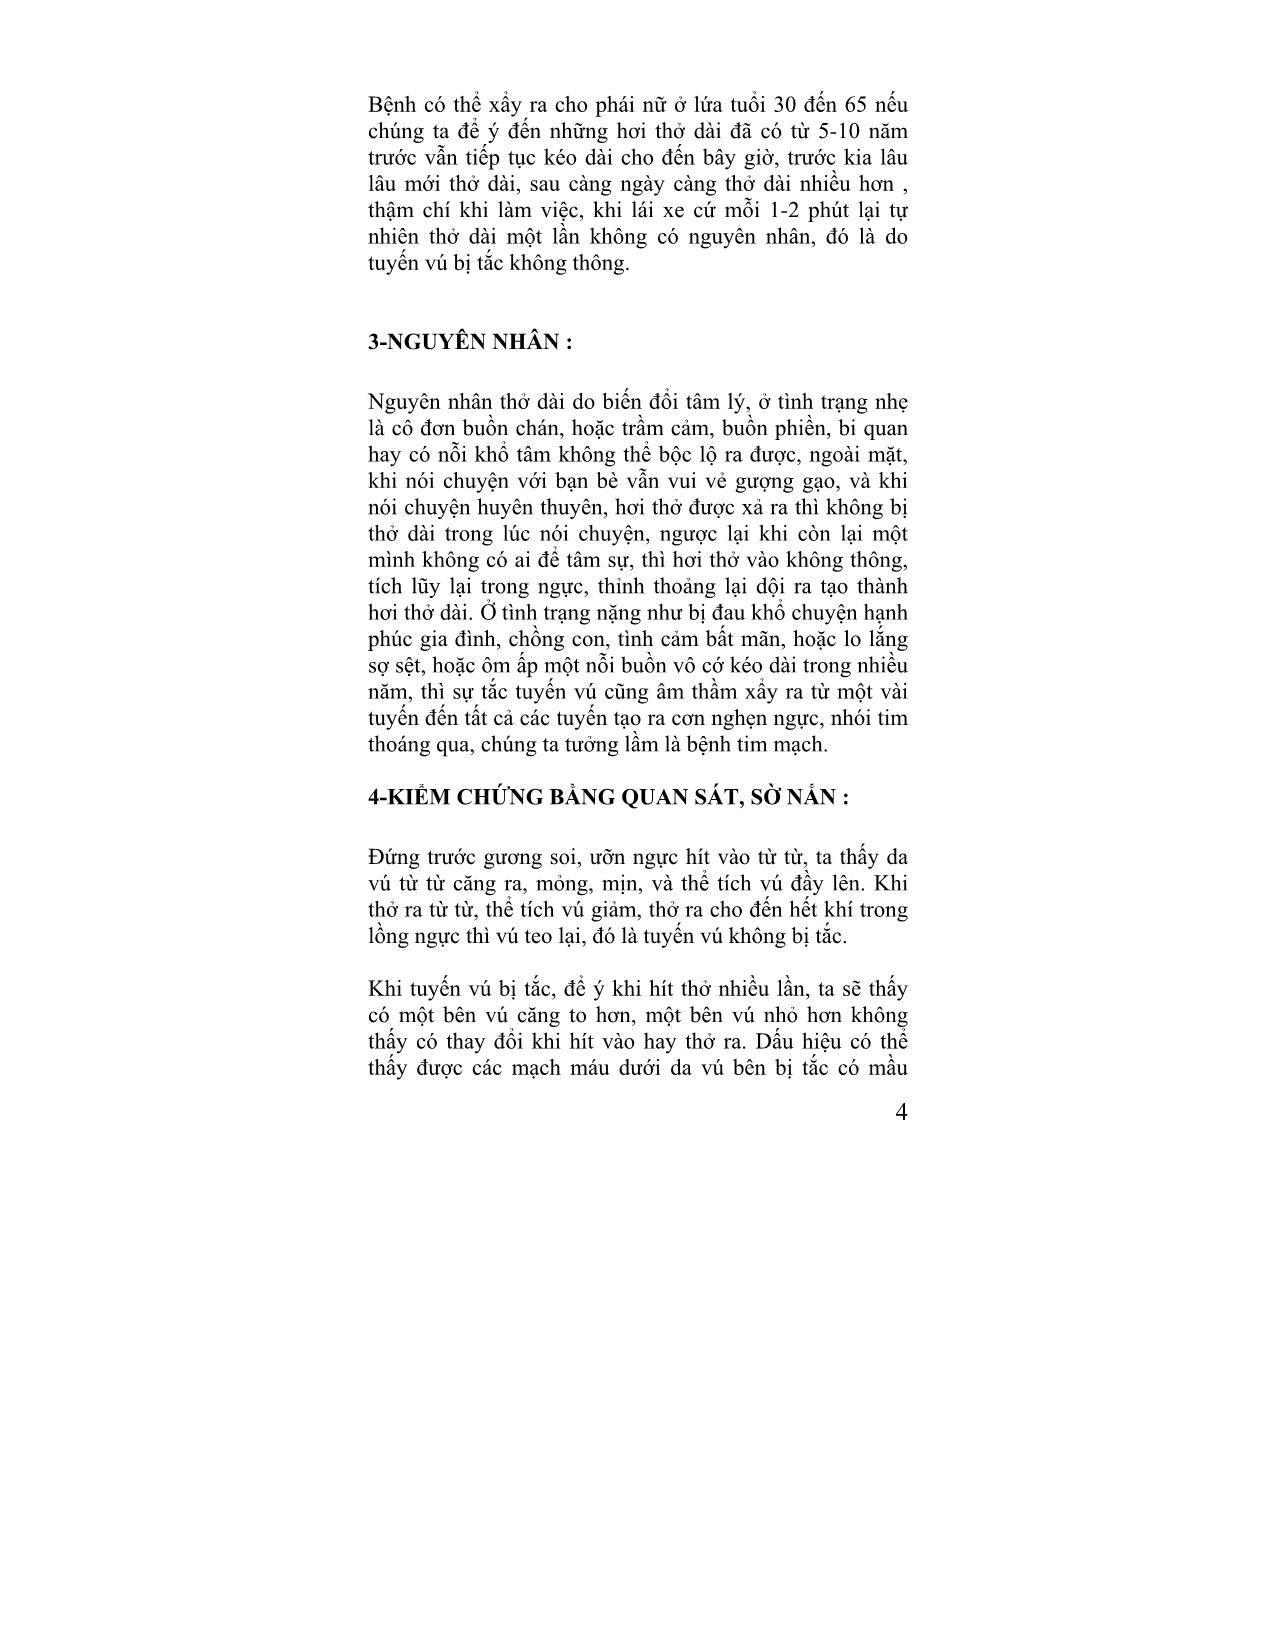 Giáo trình Câu chuyện đông y (Tập 4) trang 4